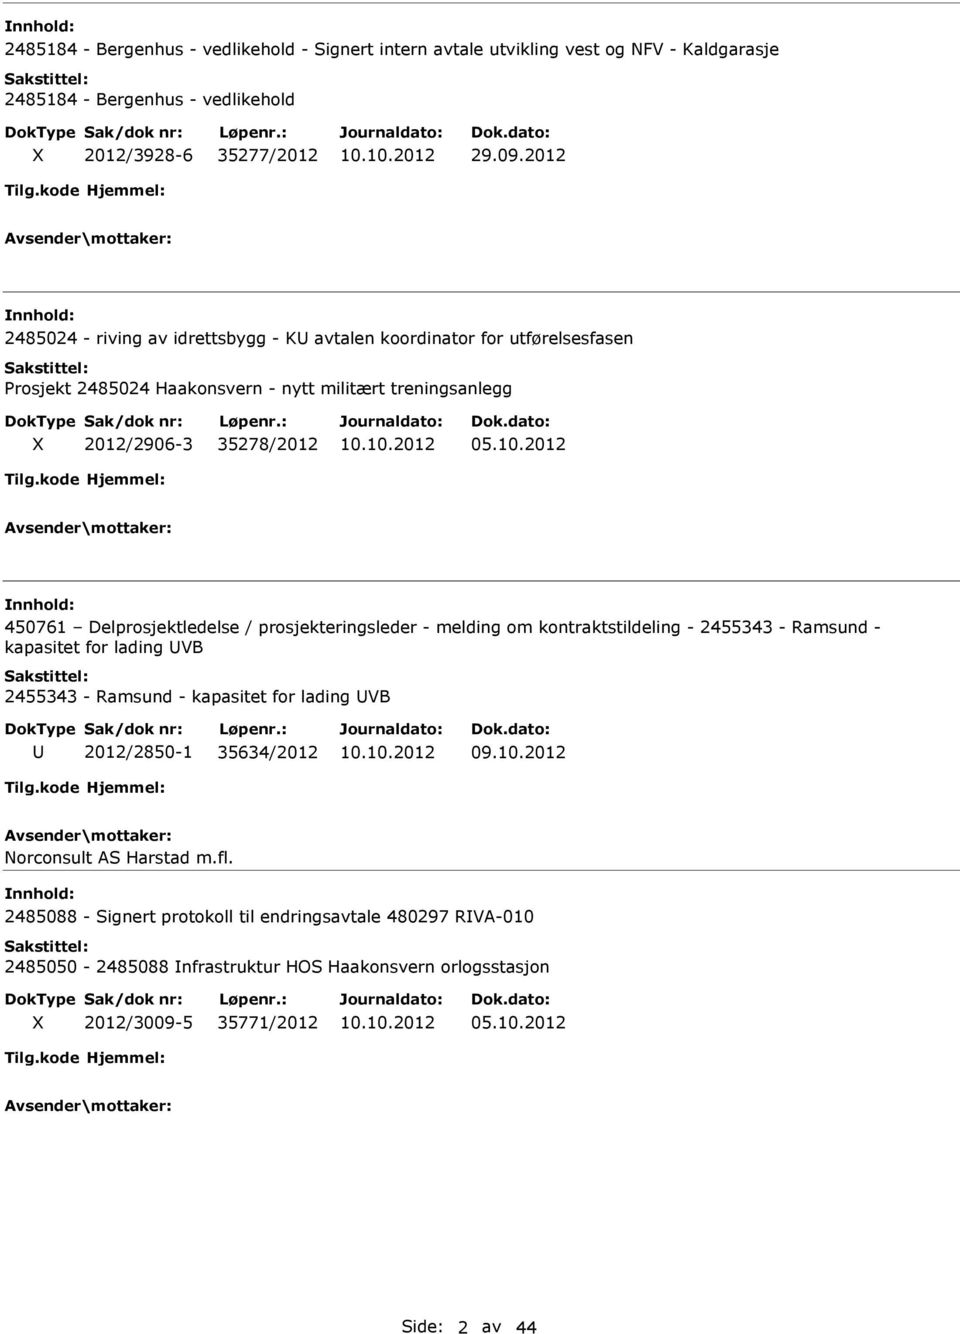 2012 450761 Delprosjektledelse / prosjekteringsleder - melding om kontraktstildeling - 2455343 - Ramsund - kapasitet for lading UVB 2455343 - Ramsund - kapasitet for lading UVB U